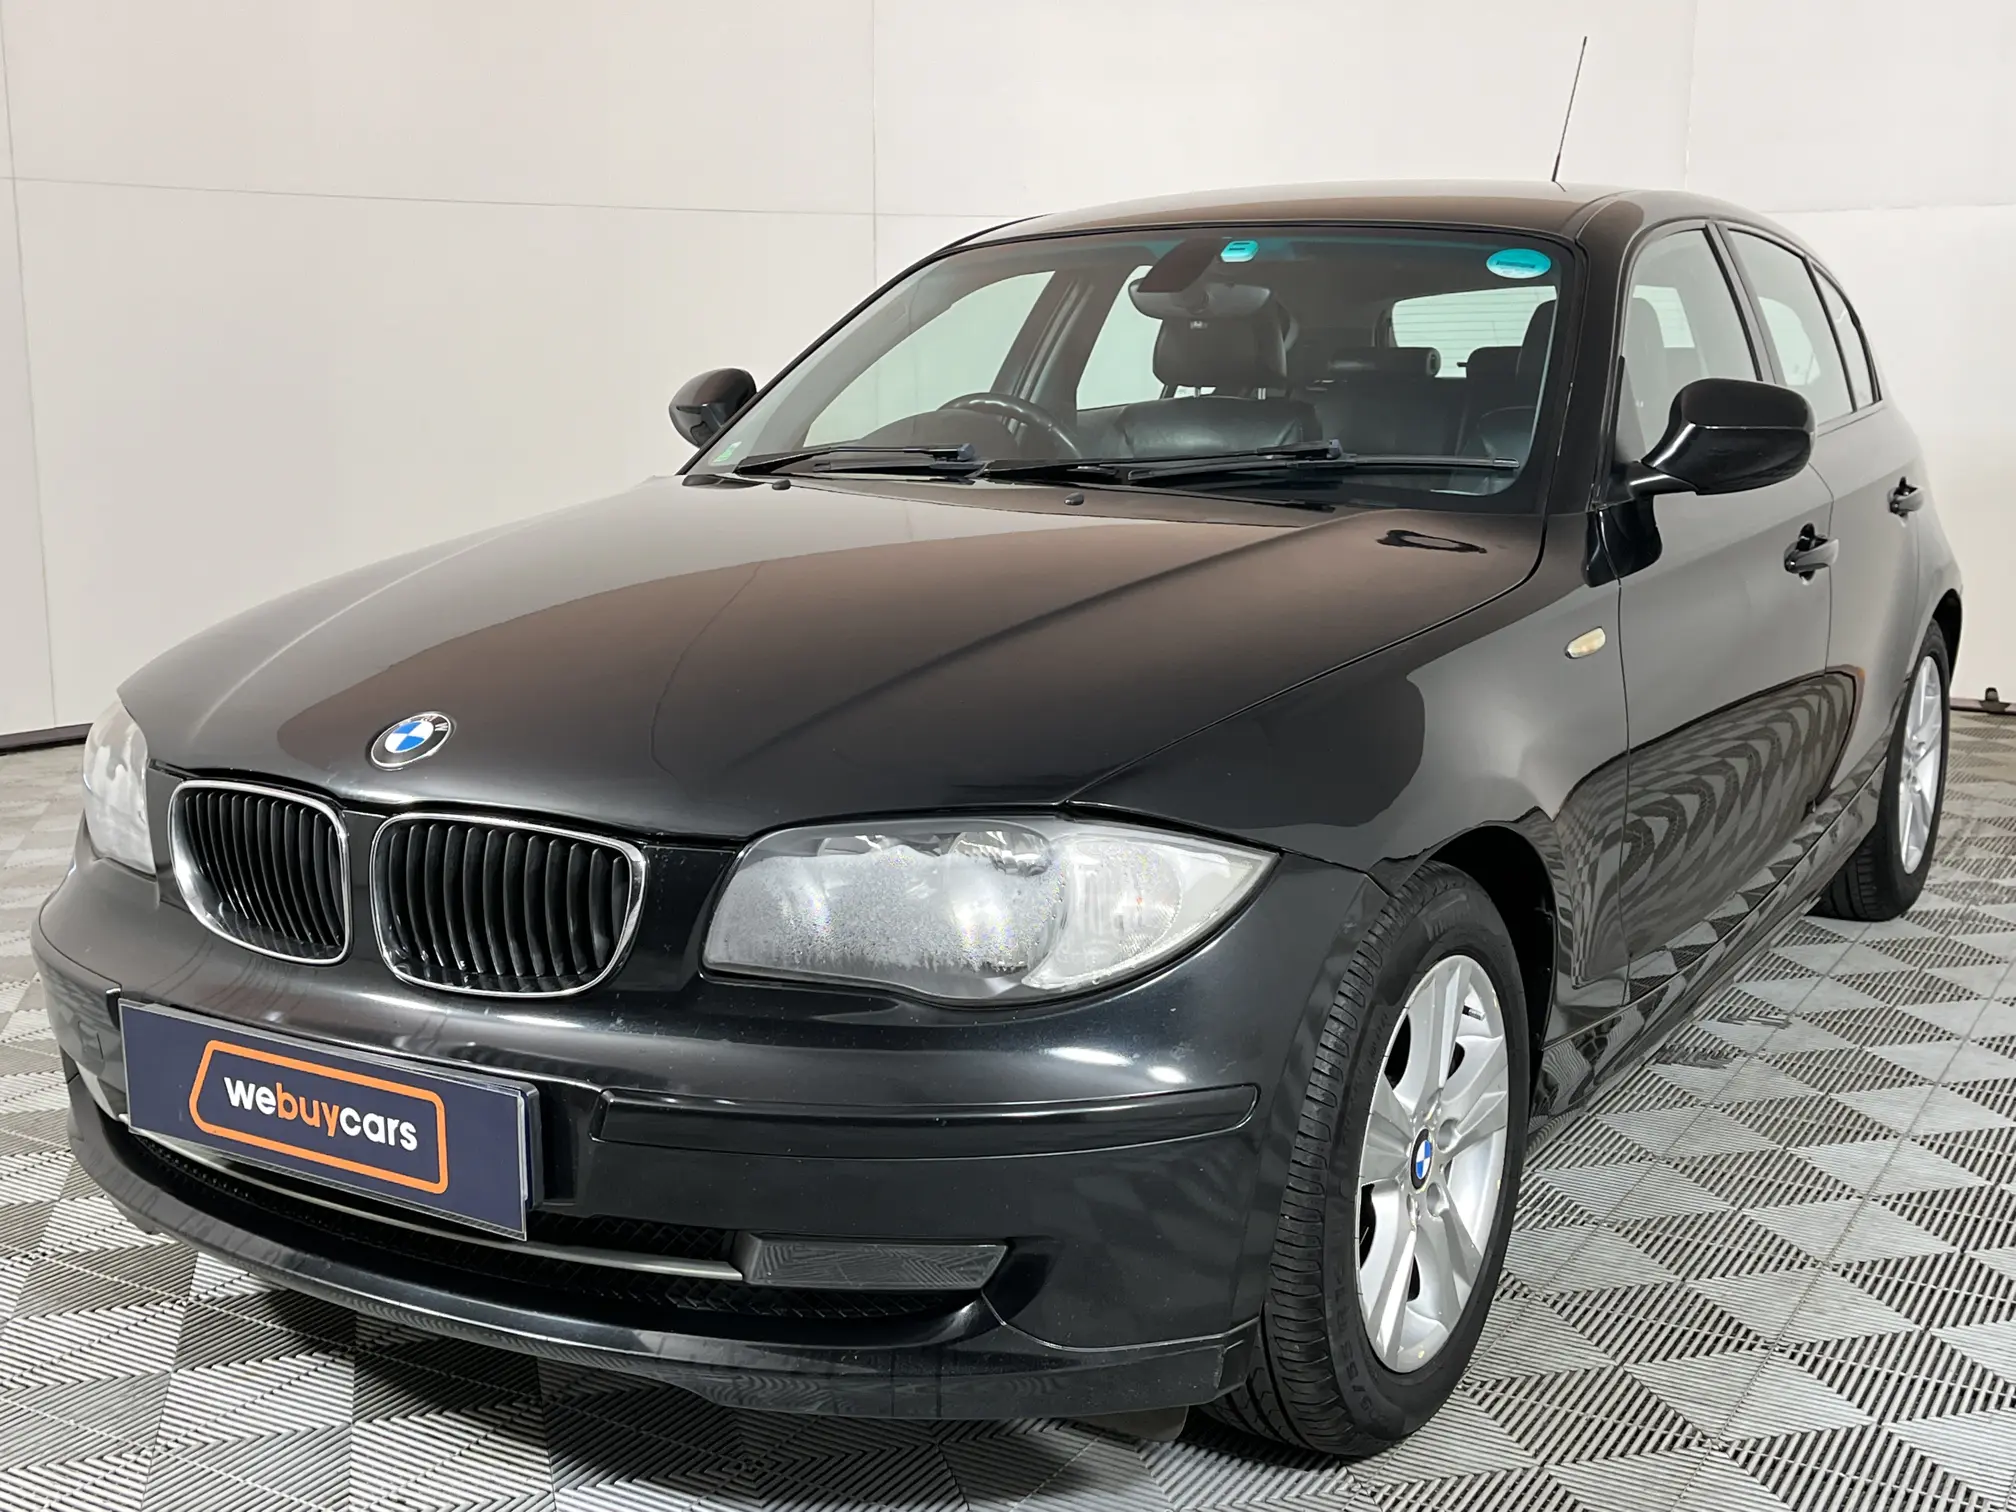 2009 BMW 1 Series 118i (E87)